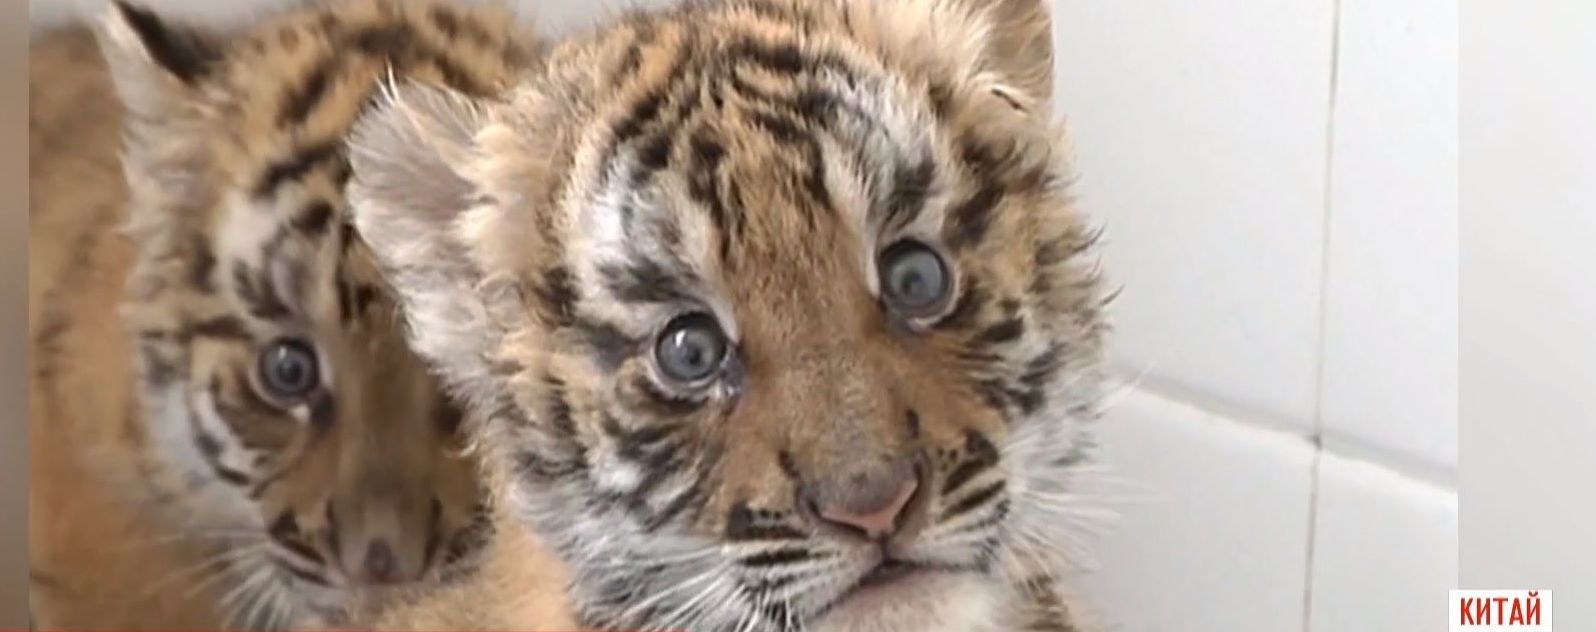 В китайском зоопарке опекают редких тигрят